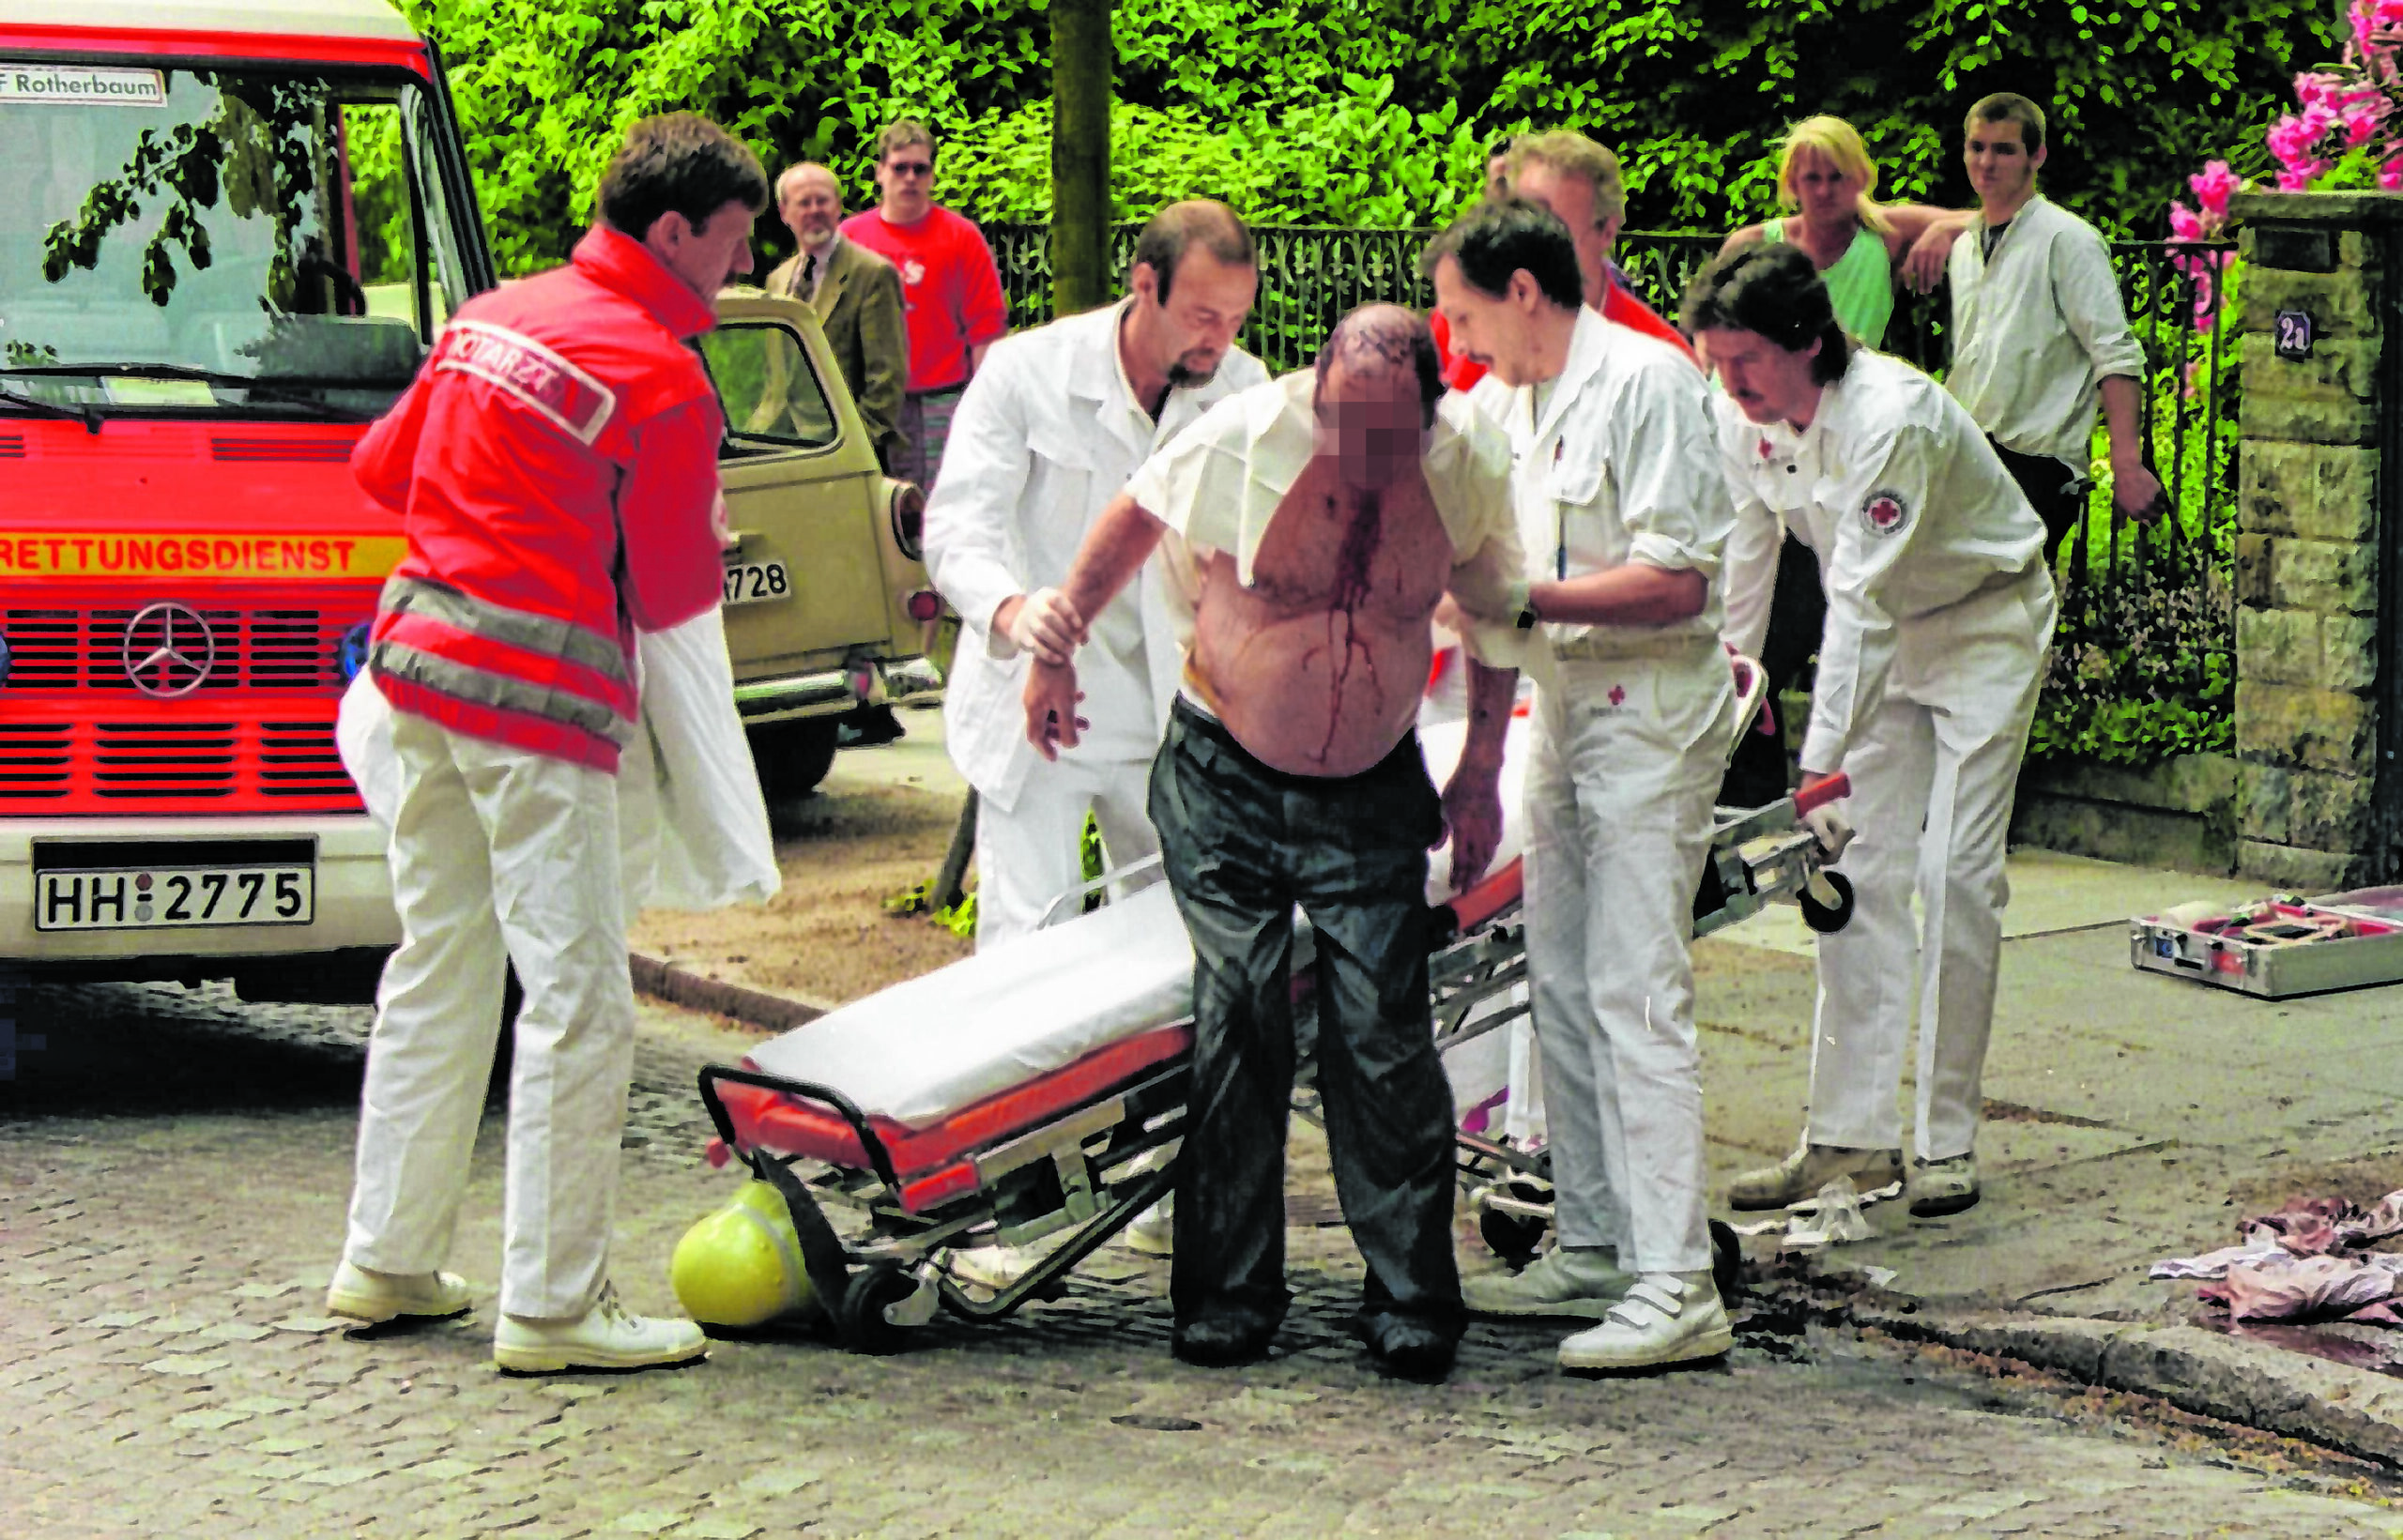 Nach dem Mordanschlag wird Dr. Jens-Peter L. (78) an der Magdalenenstraße von Rettungs-Sanitätern versorgt.